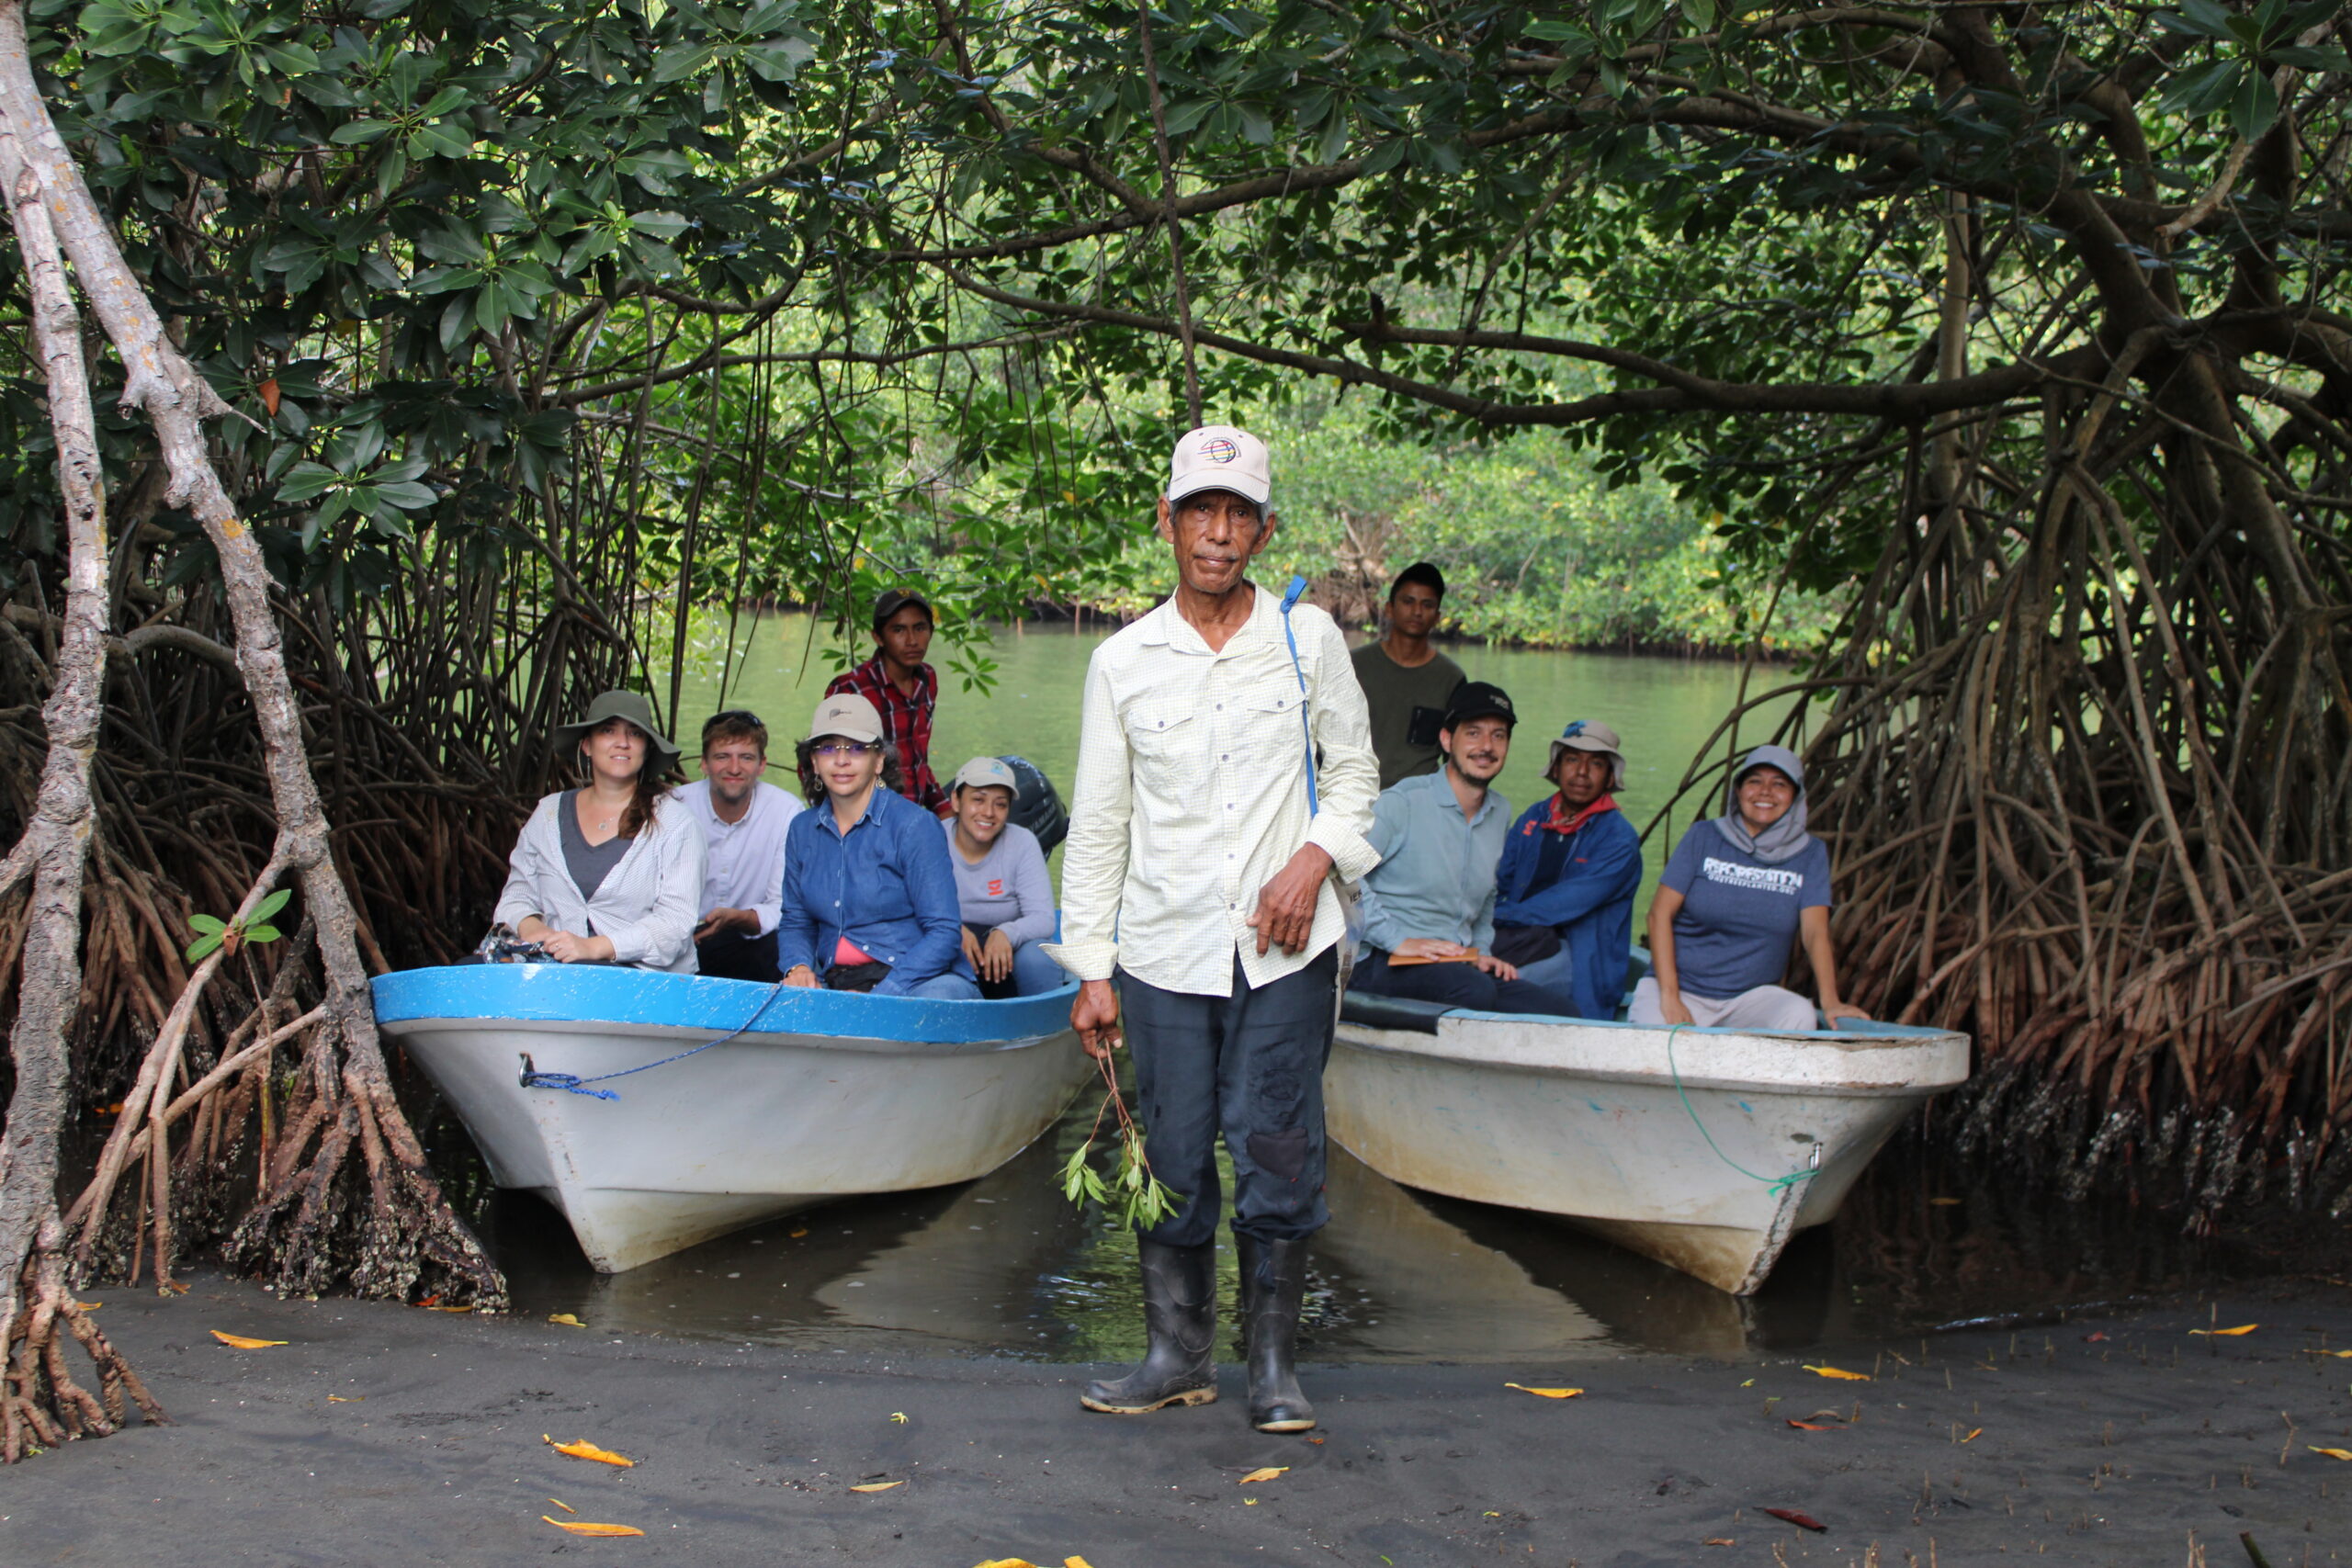 Restoration project participants in Chiapas, Mexico